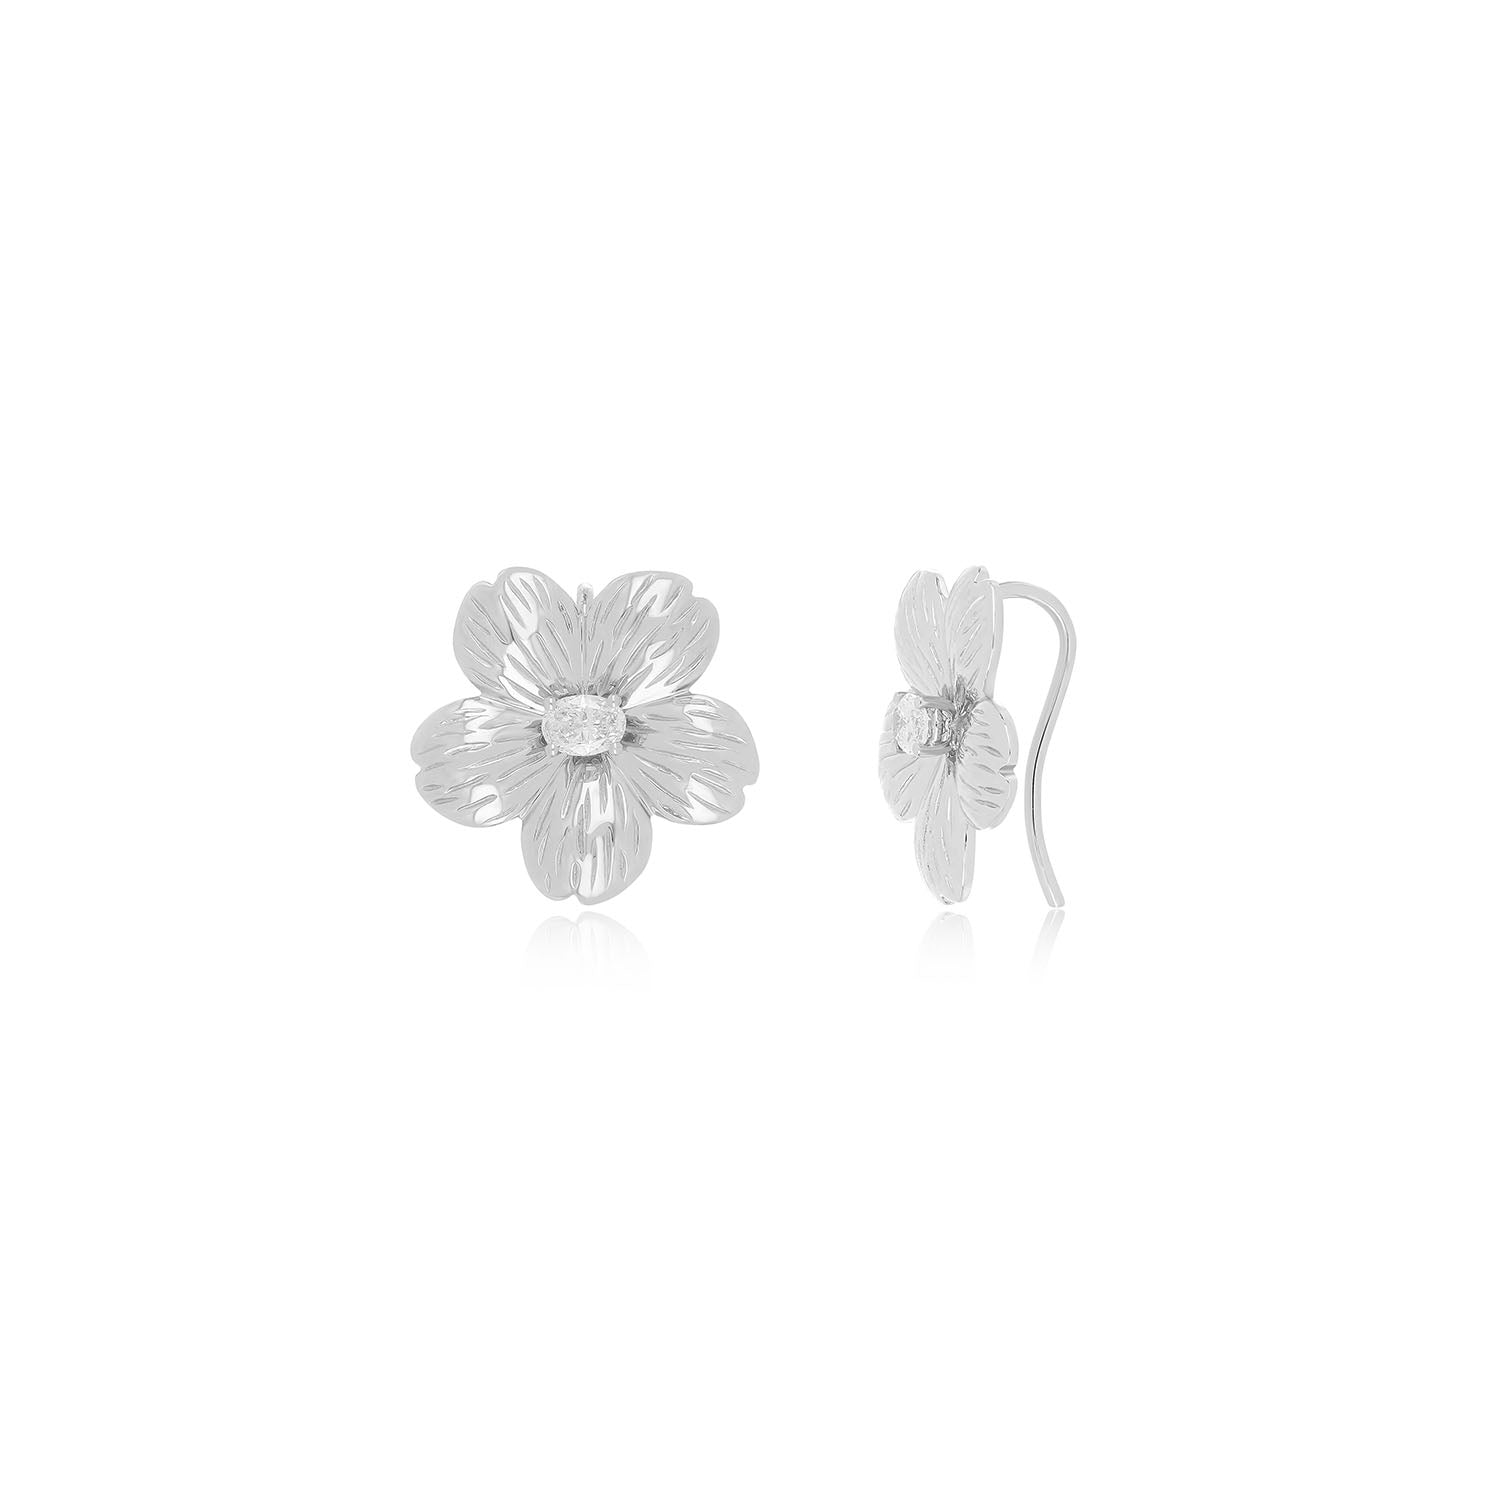 Cherry Blossom Earrings in 14k white gold